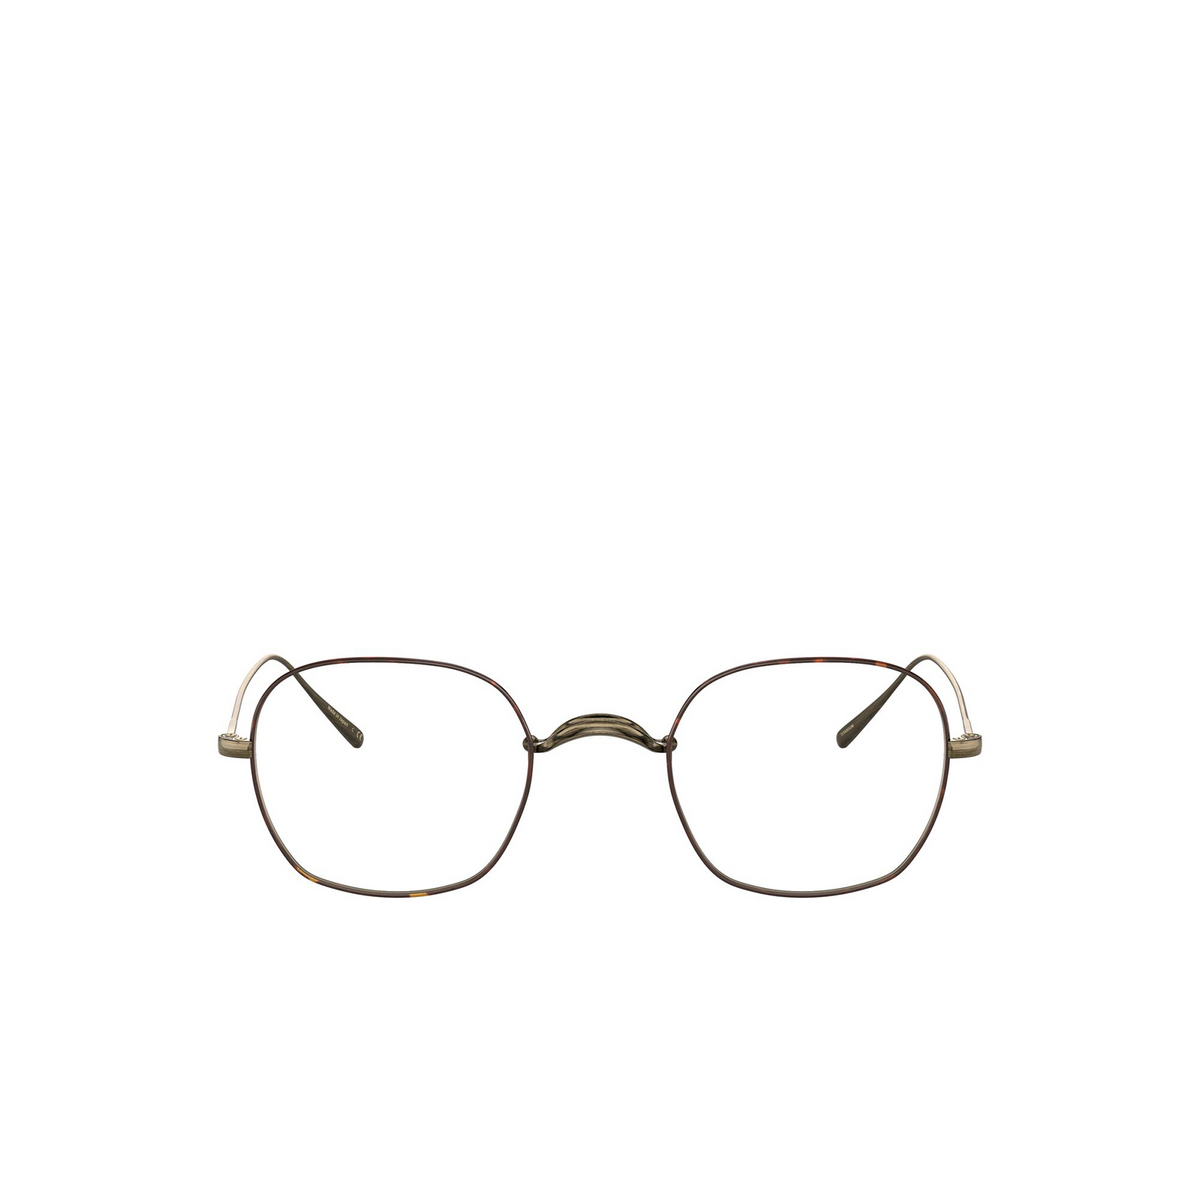 Oliver Peoples® Square Eyeglasses: Carles OV1270T color Antique Gold / Dtbk 5284 - front view.